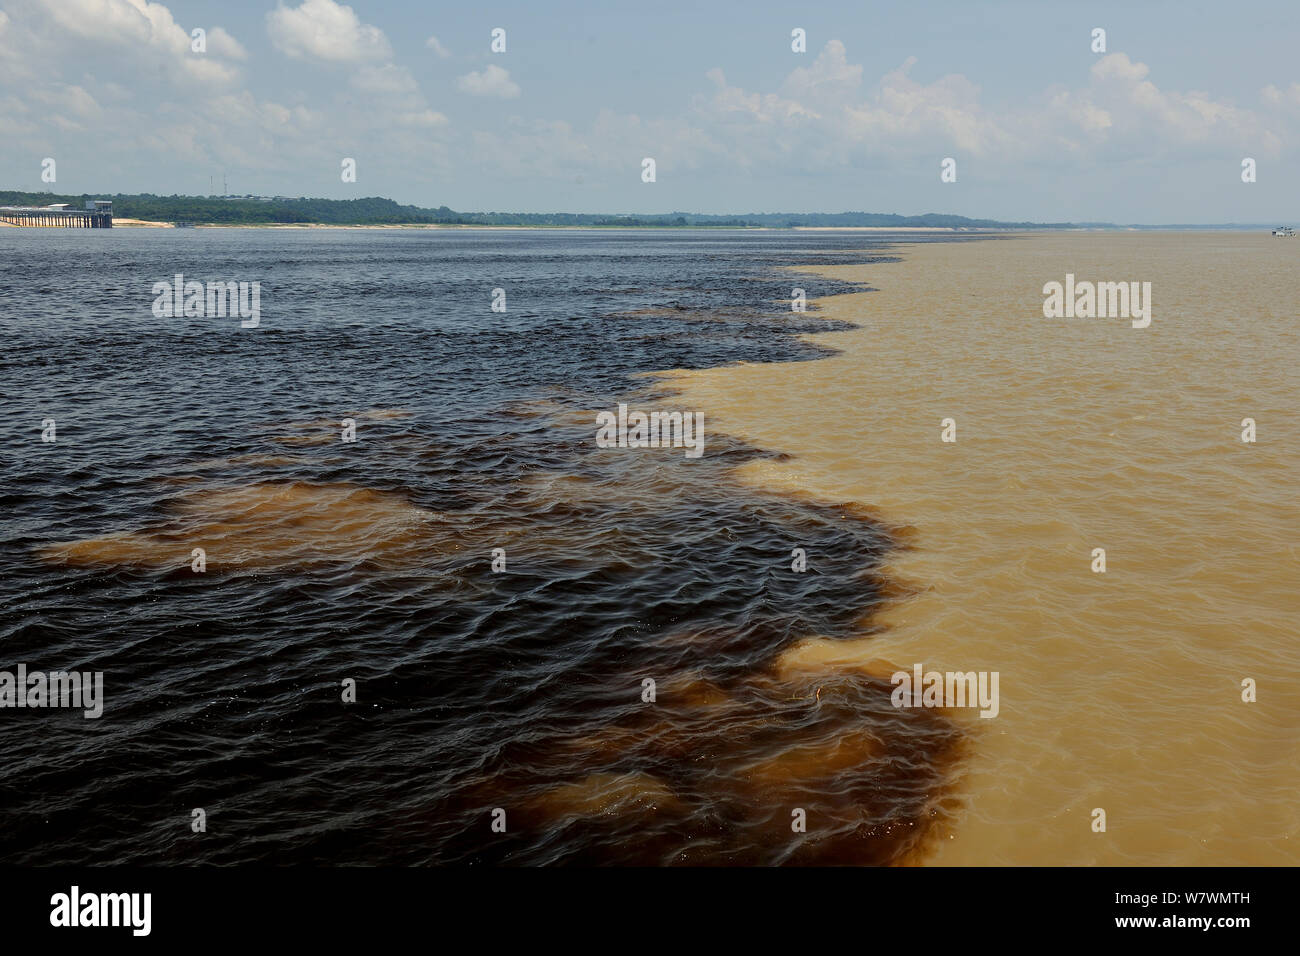 Rencontre des eaux de la Rivière Negro et Solimoes, formant l'Amazone, 18 km à l'Est de Manaus, l'état d'Amazonas, dans le nord du Brésil. Banque D'Images